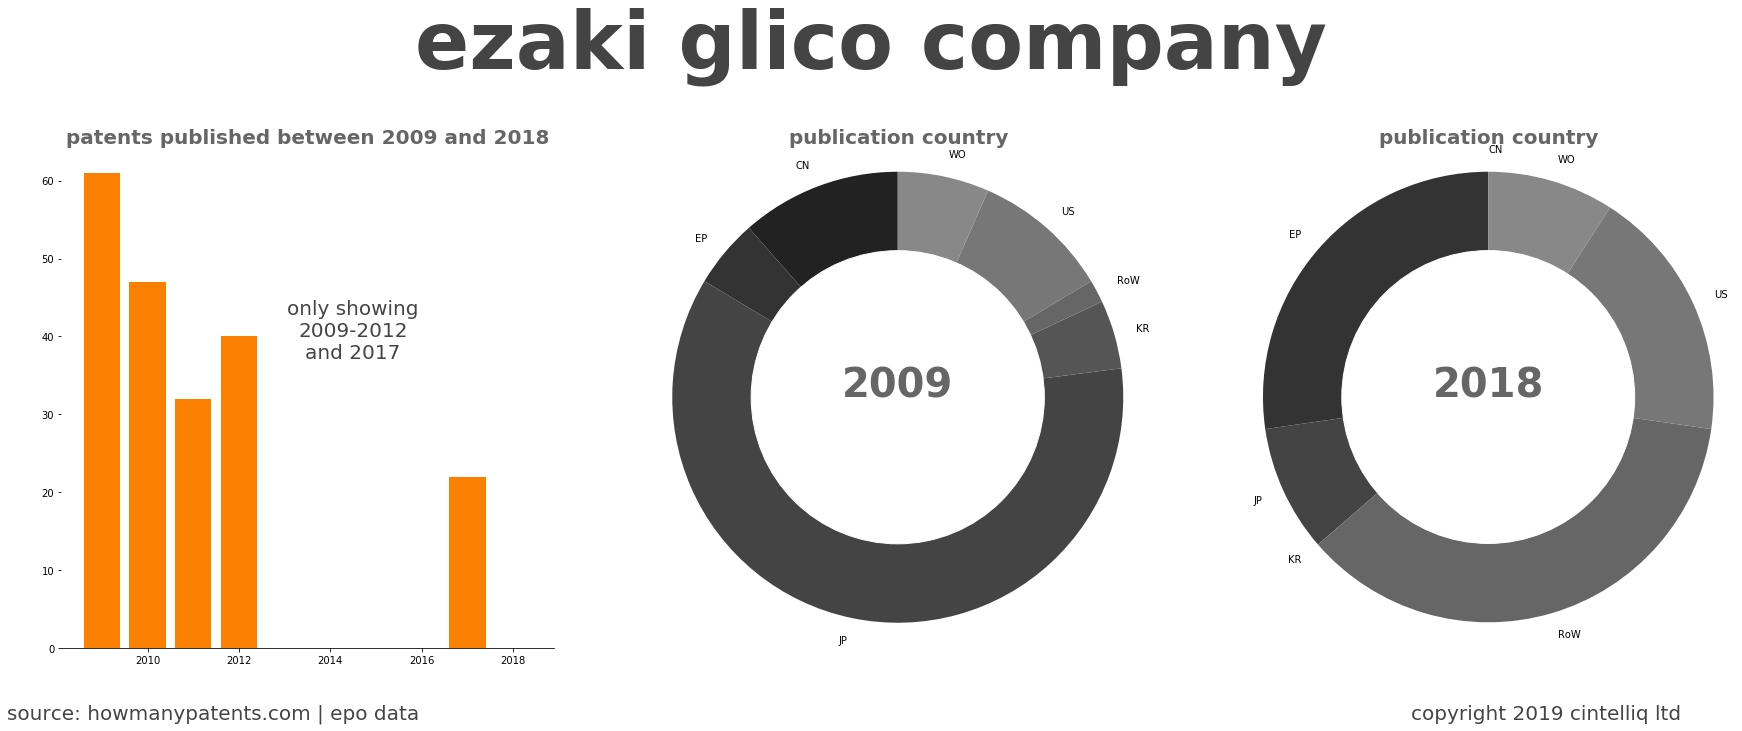 summary of patents for Ezaki Glico Company